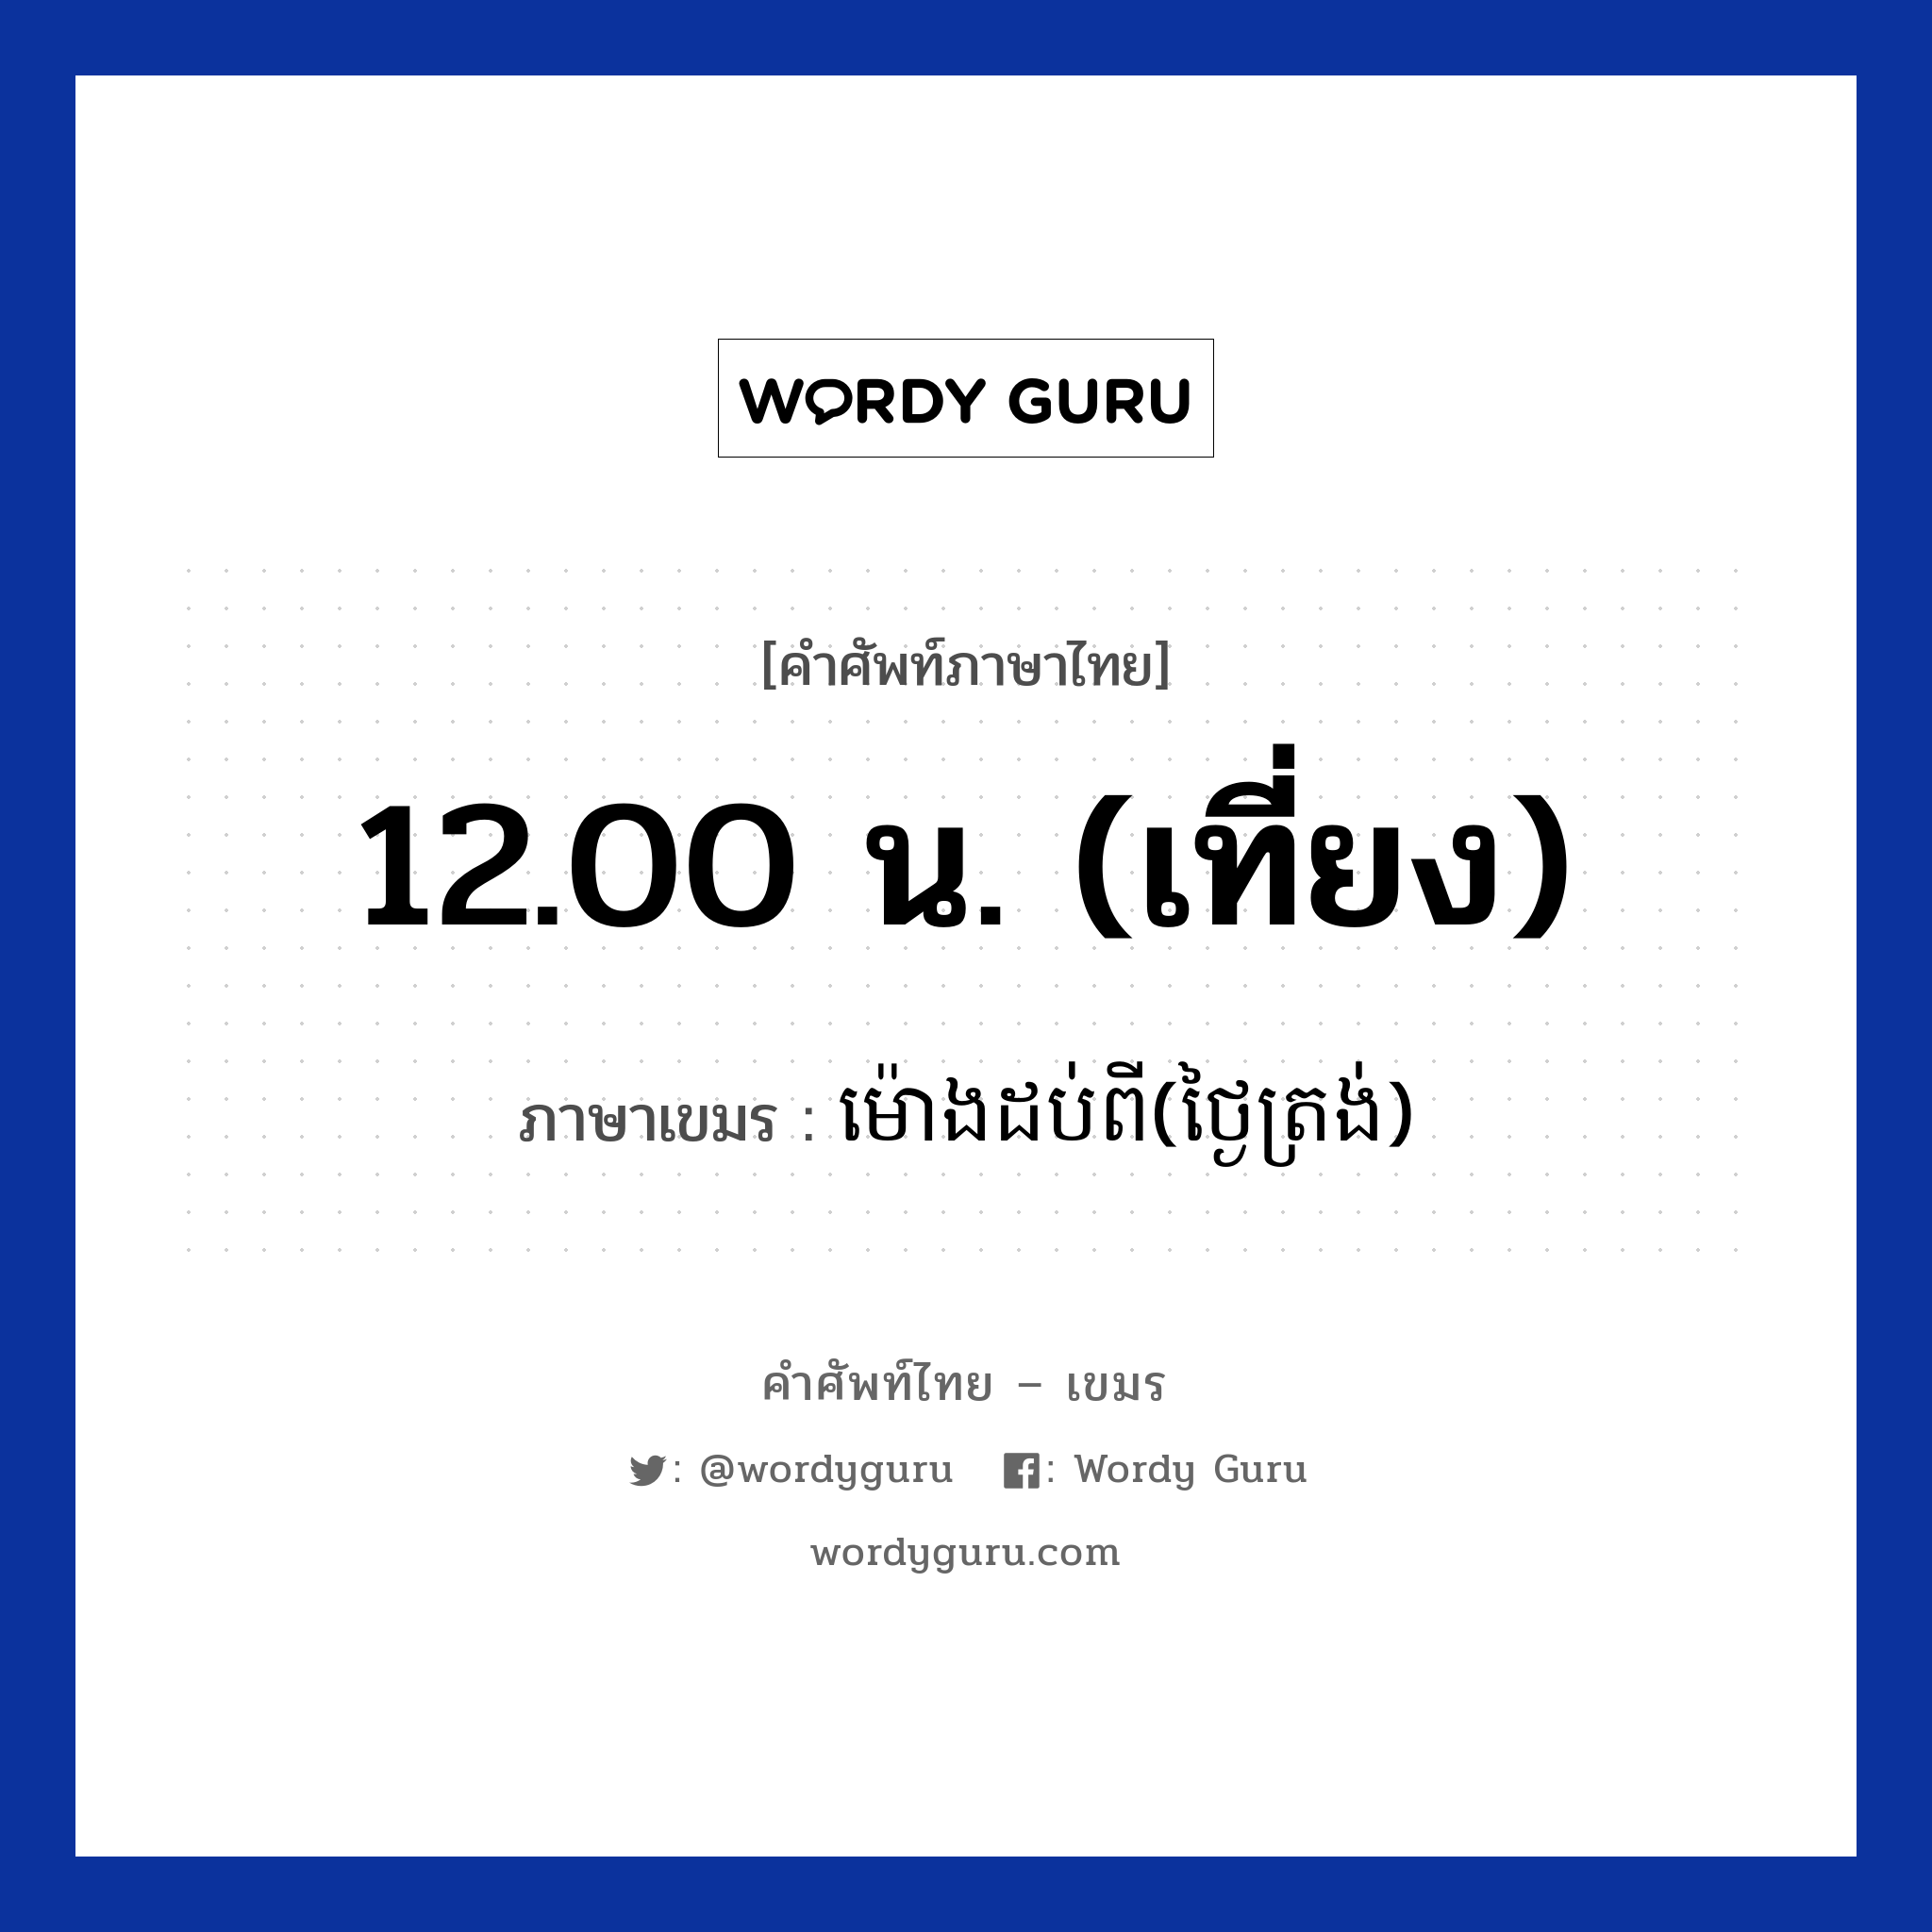 ម៉ោងដប់ពី(ថ្ងៃត្រង់) ภาษาไทย?, คำศัพท์ภาษาไทย - เขมร ម៉ោងដប់ពី(ថ្ងៃត្រង់) ภาษาเขมร 12.00 น. (เที่ยง) หมวด เวลา Mong dobpii(tngaitrong) หมวด เวลา